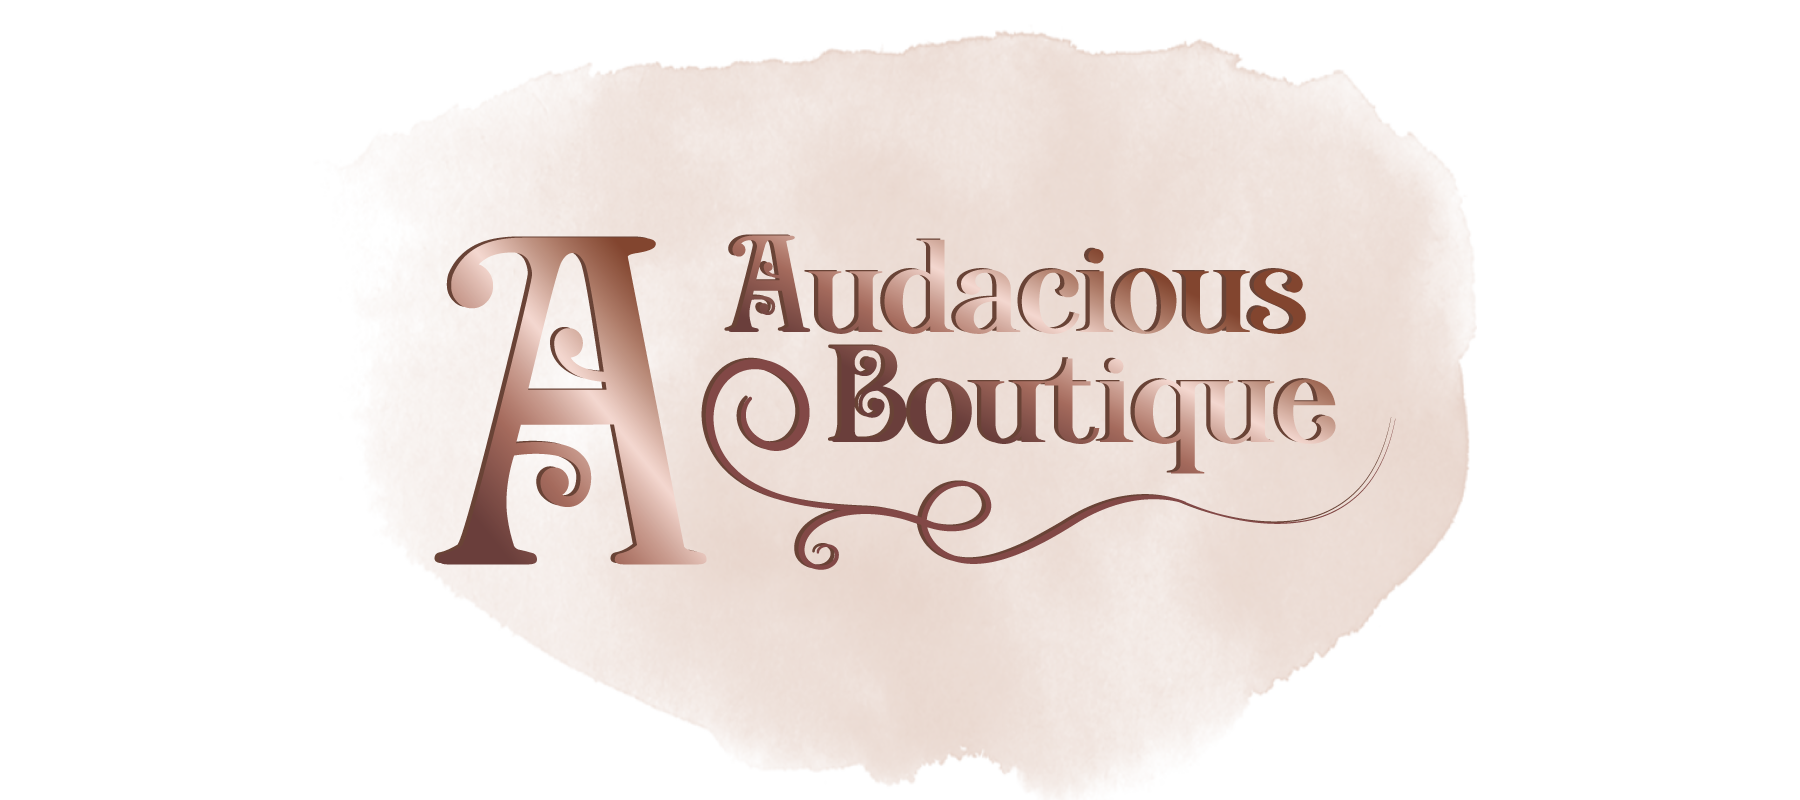 https://shopaudaciousboutique.com/cdn/shop/files/Audacious-Boutique---Web-Banner-1800x800_1800x.png?v=1614391097